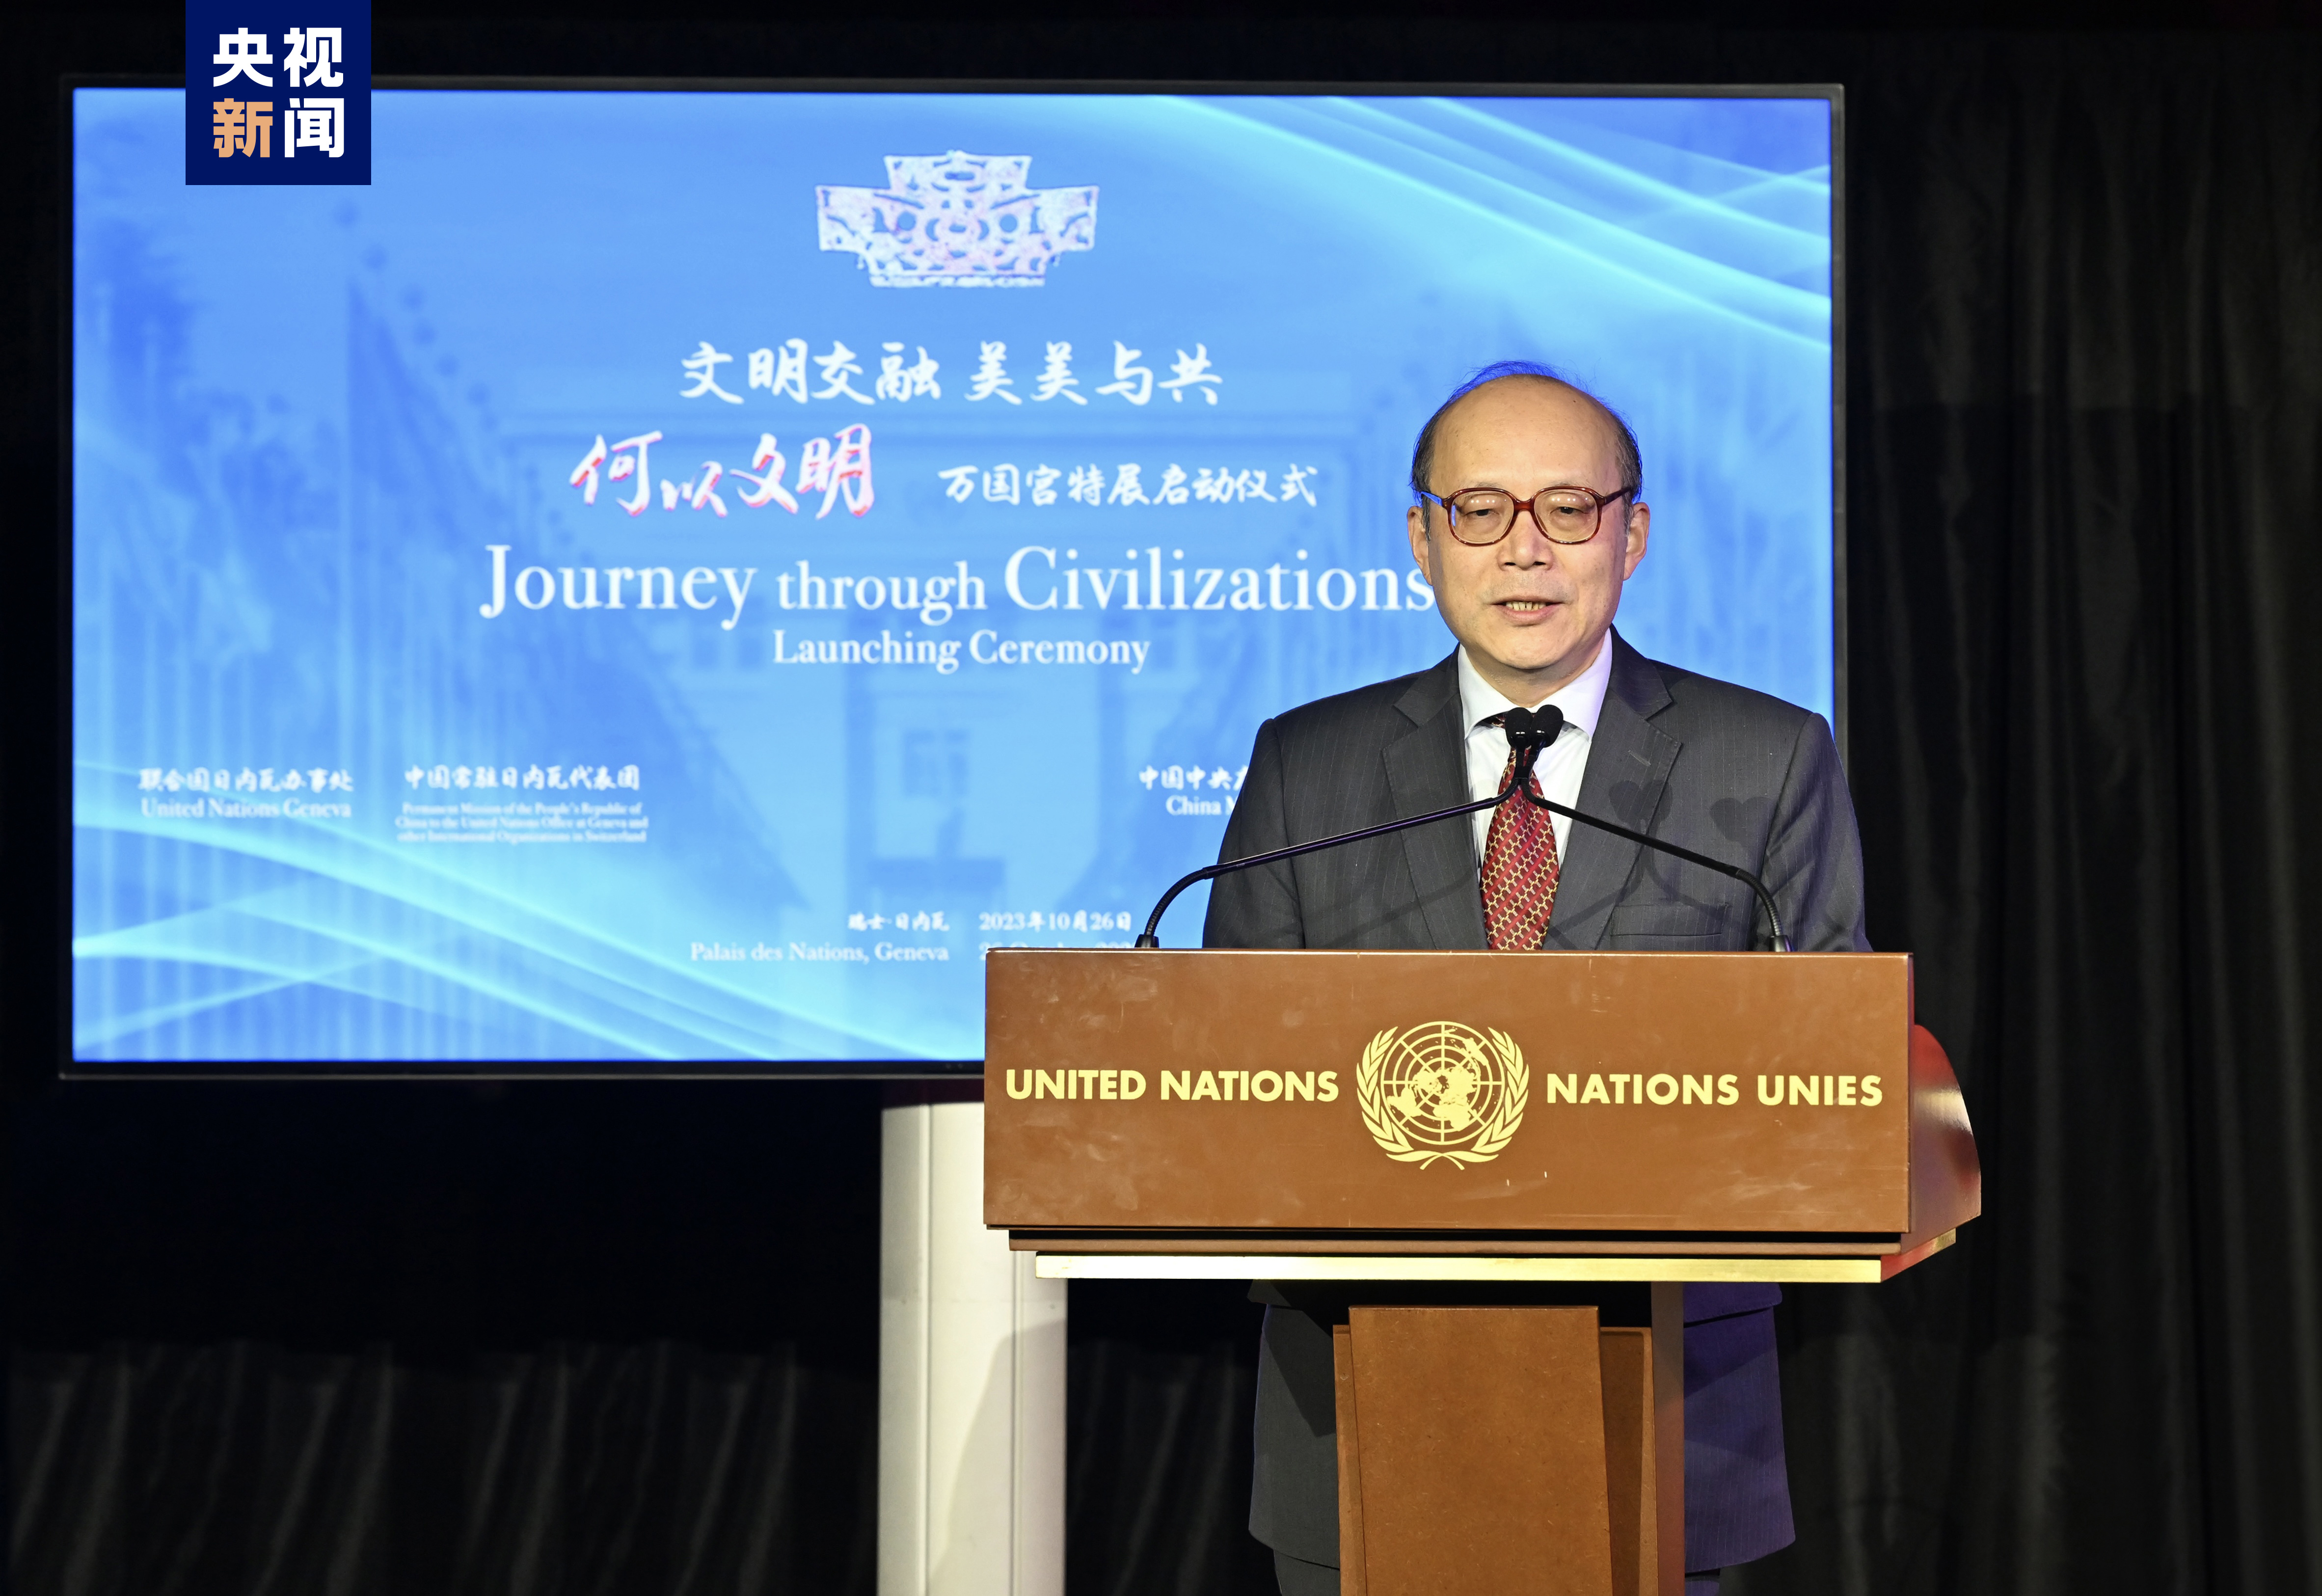 中国常驻联合国日内瓦办事处和瑞士其他国际组织代表陈旭大使